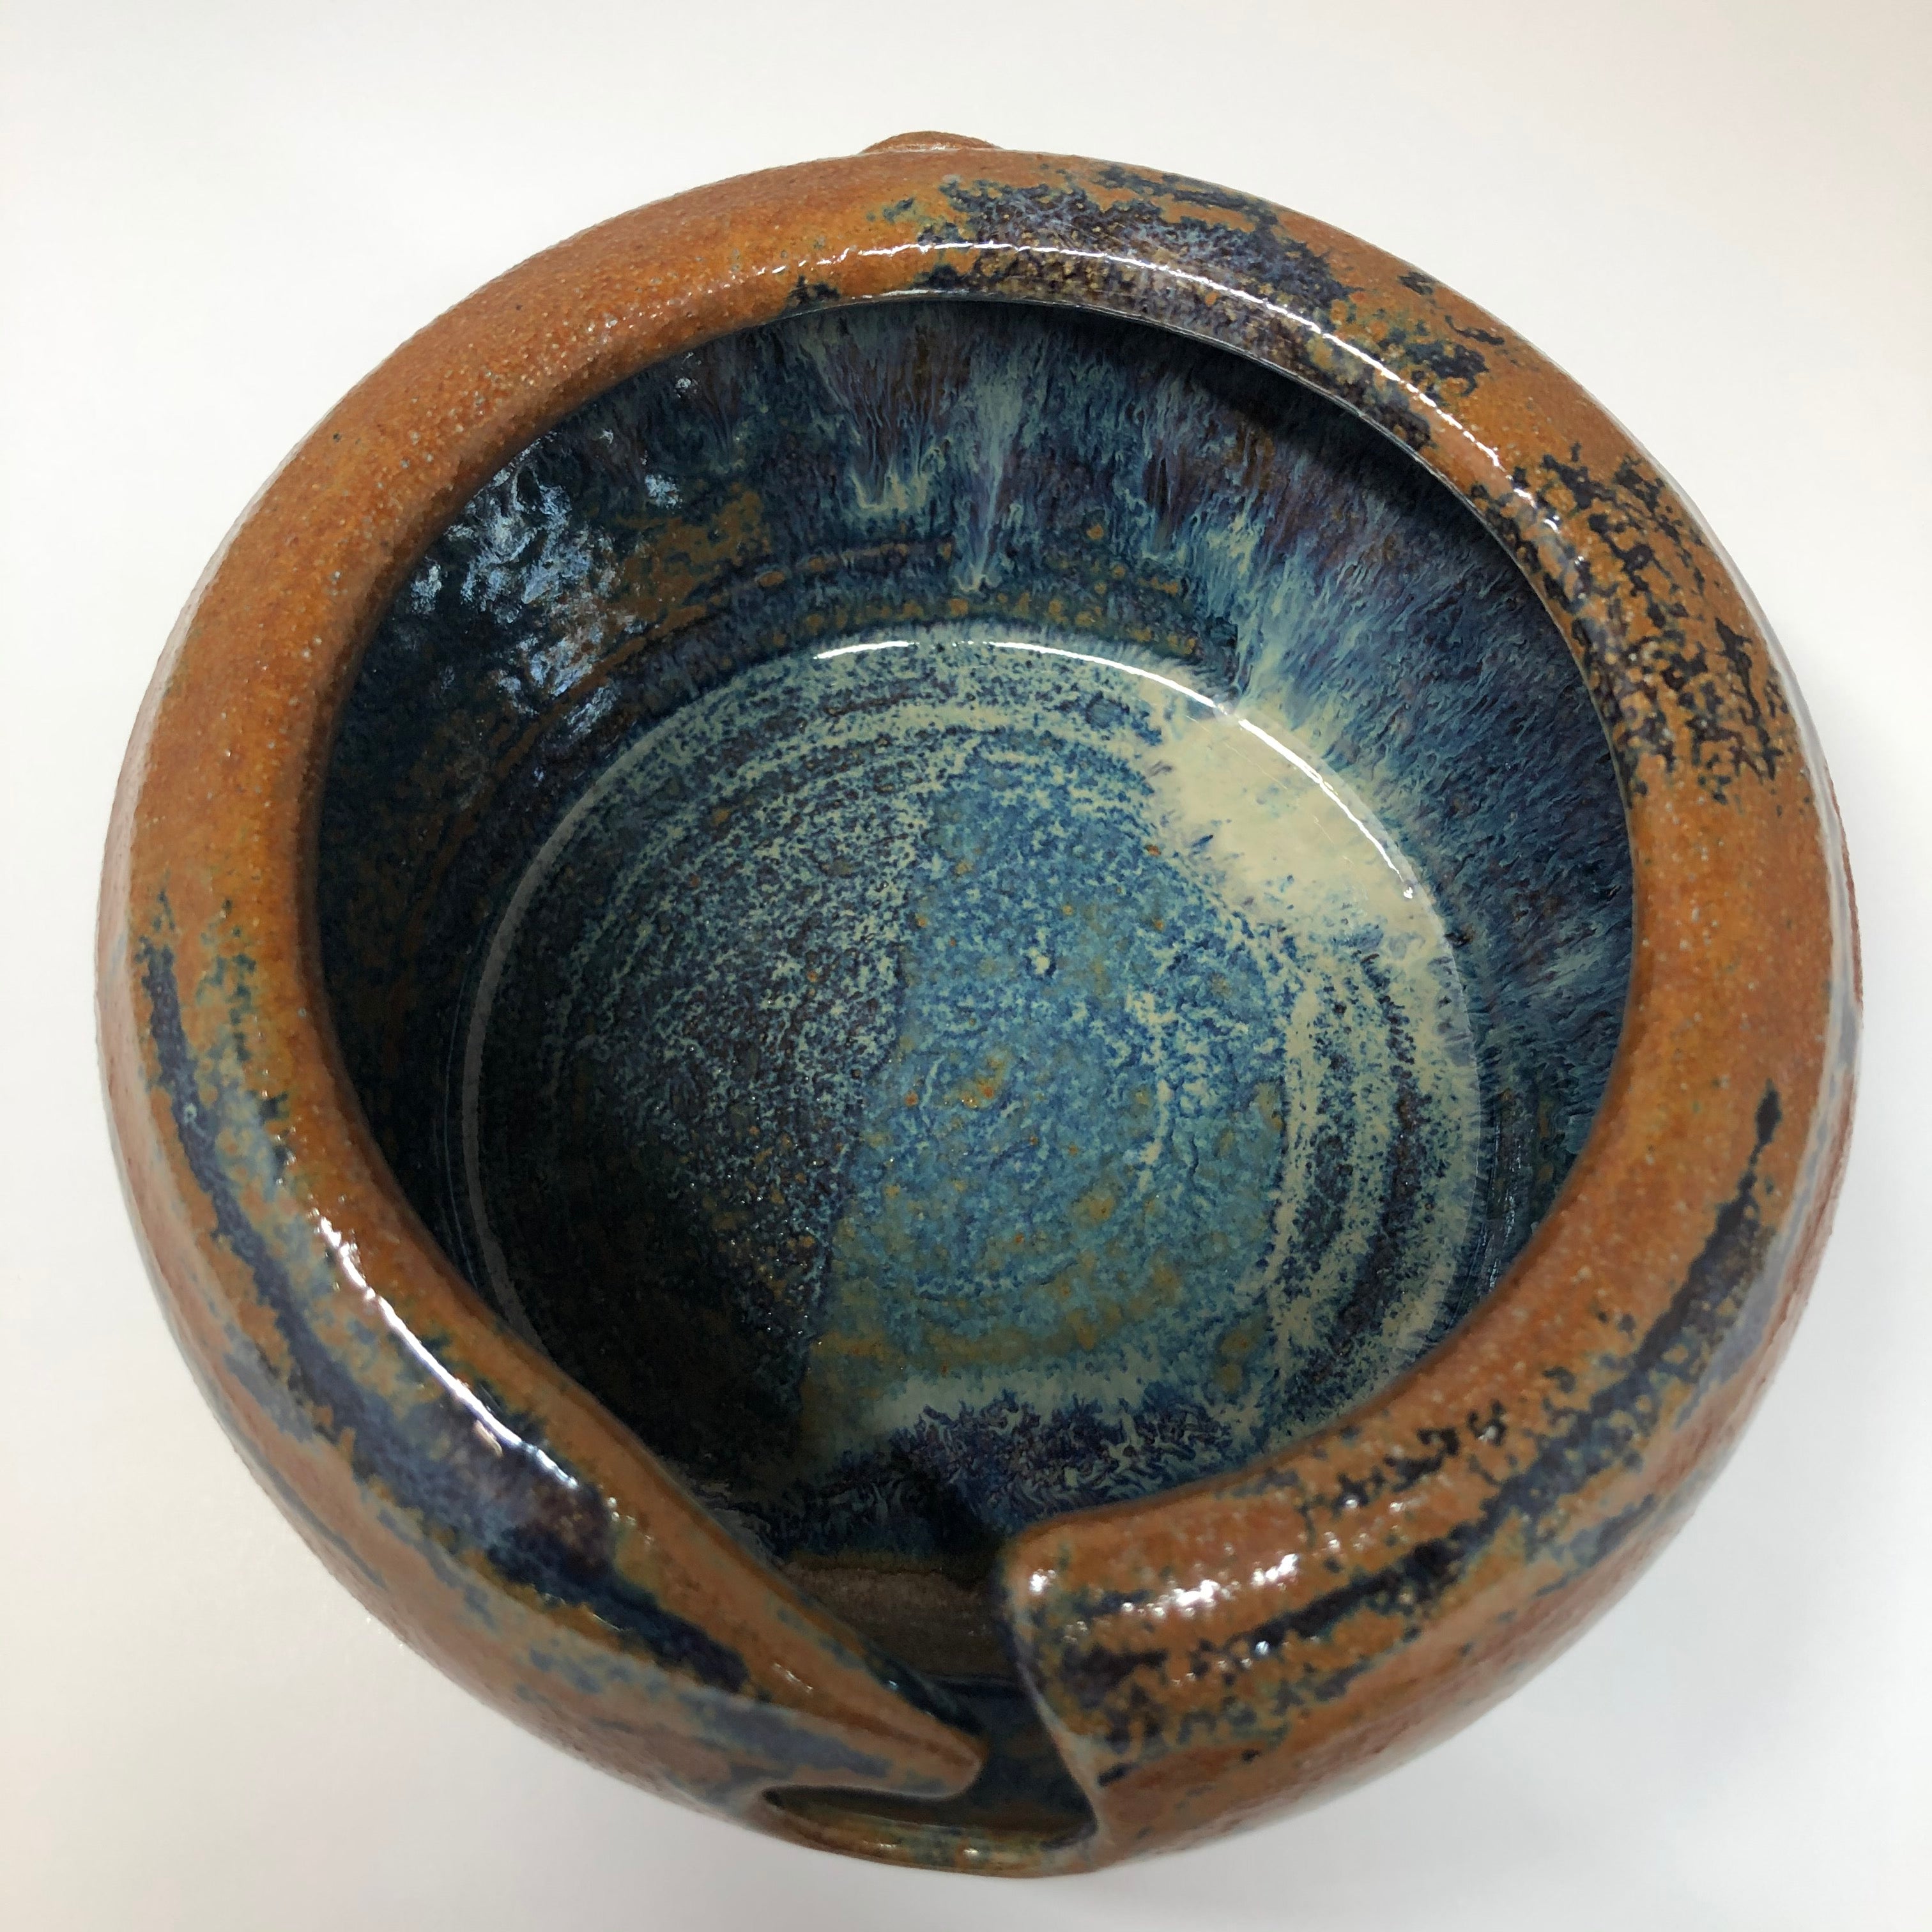 Muddy Mountain Pottery Yarn Bowl – Size 1, #36